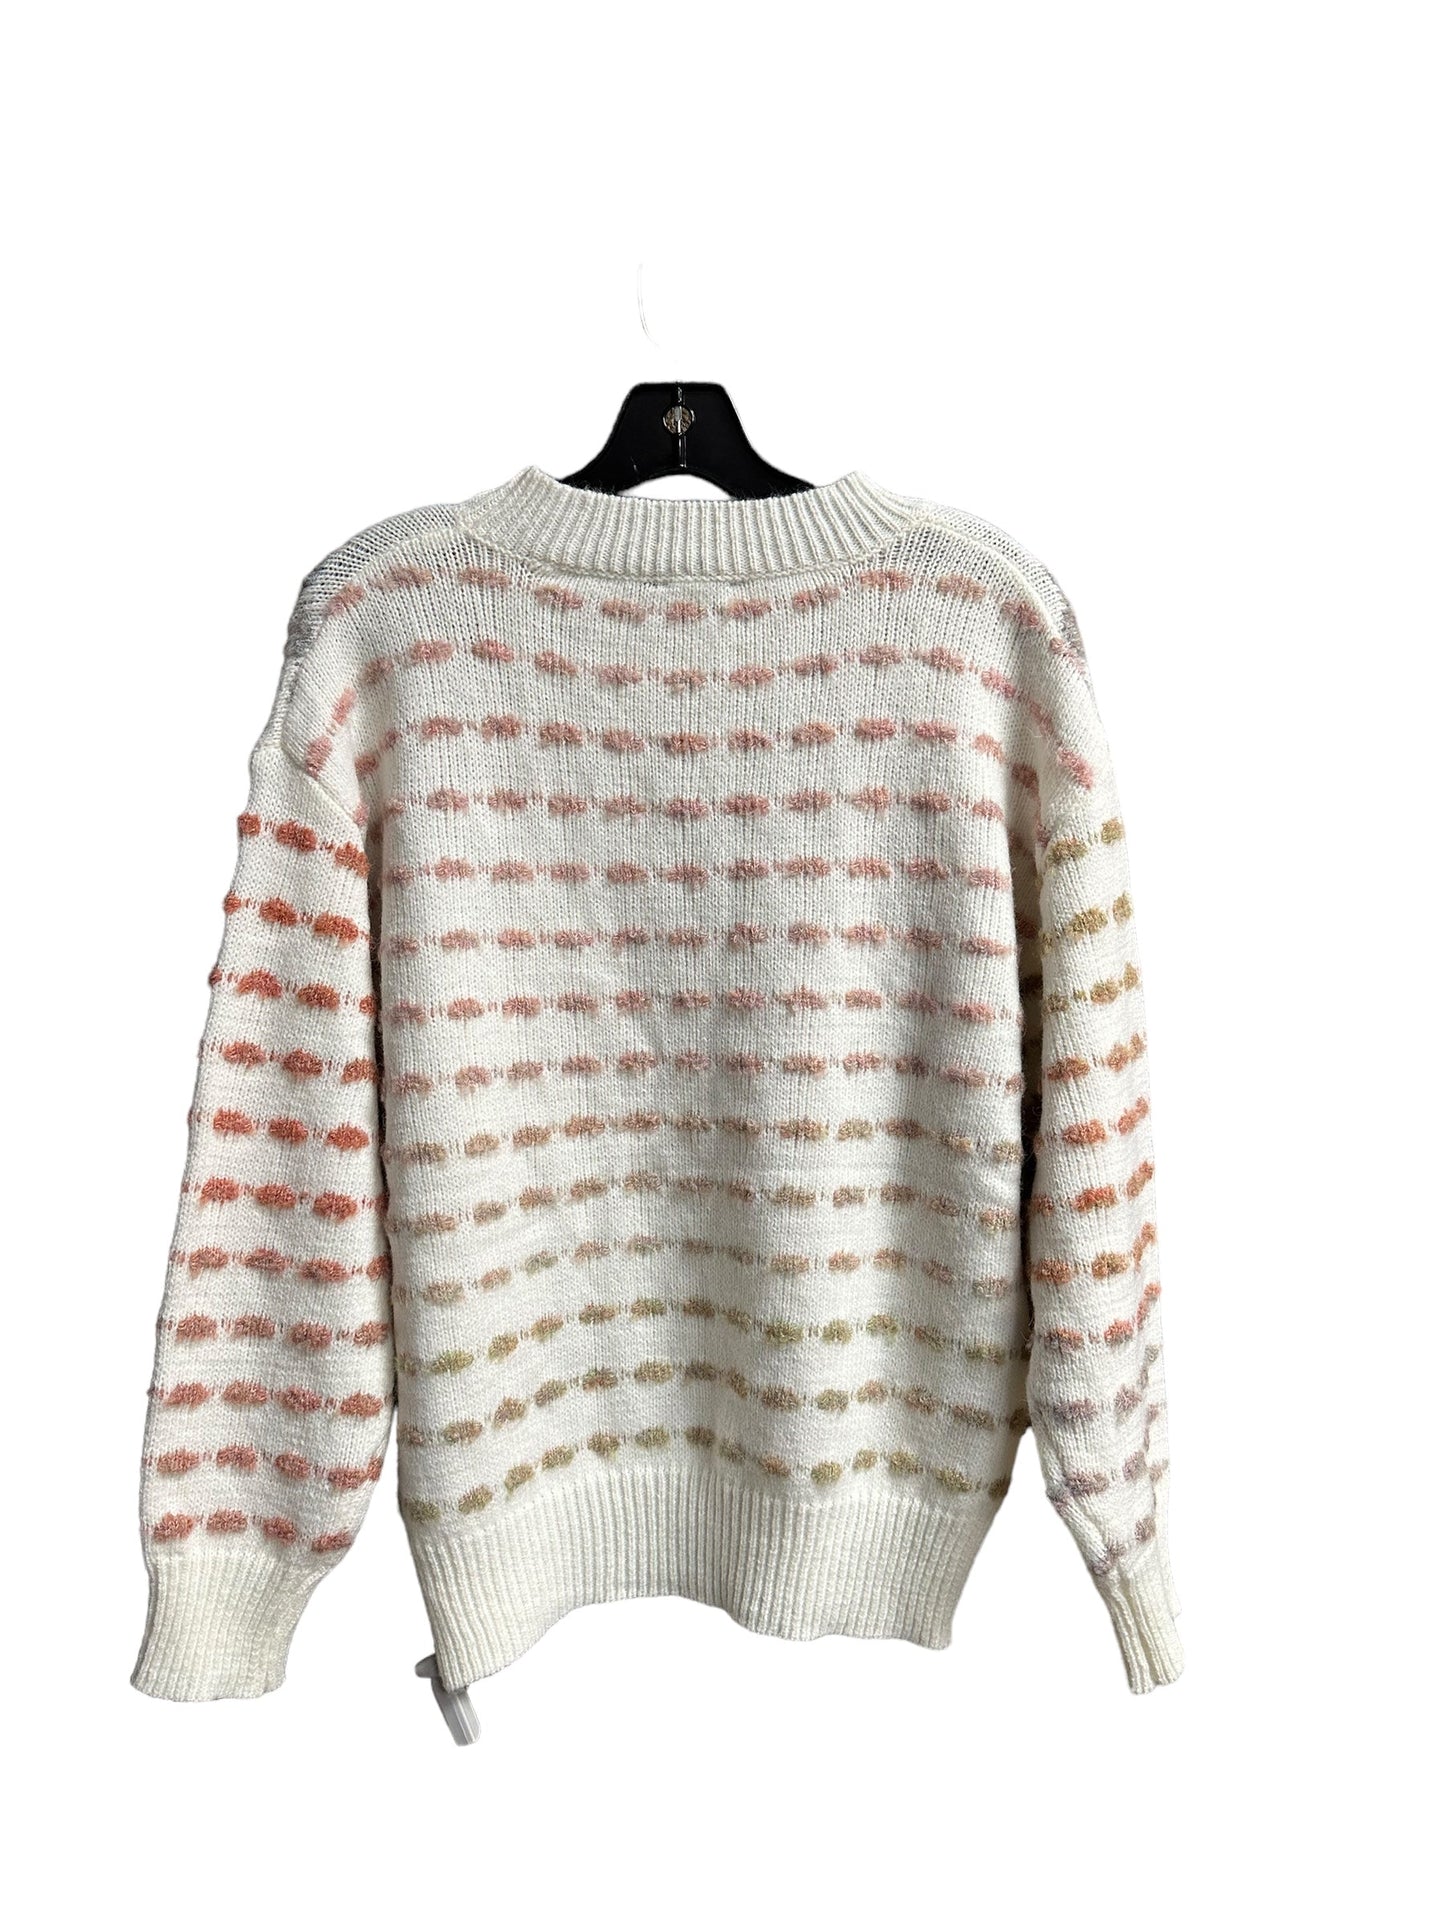 Multi-colored Sweater Lumiere, Size S